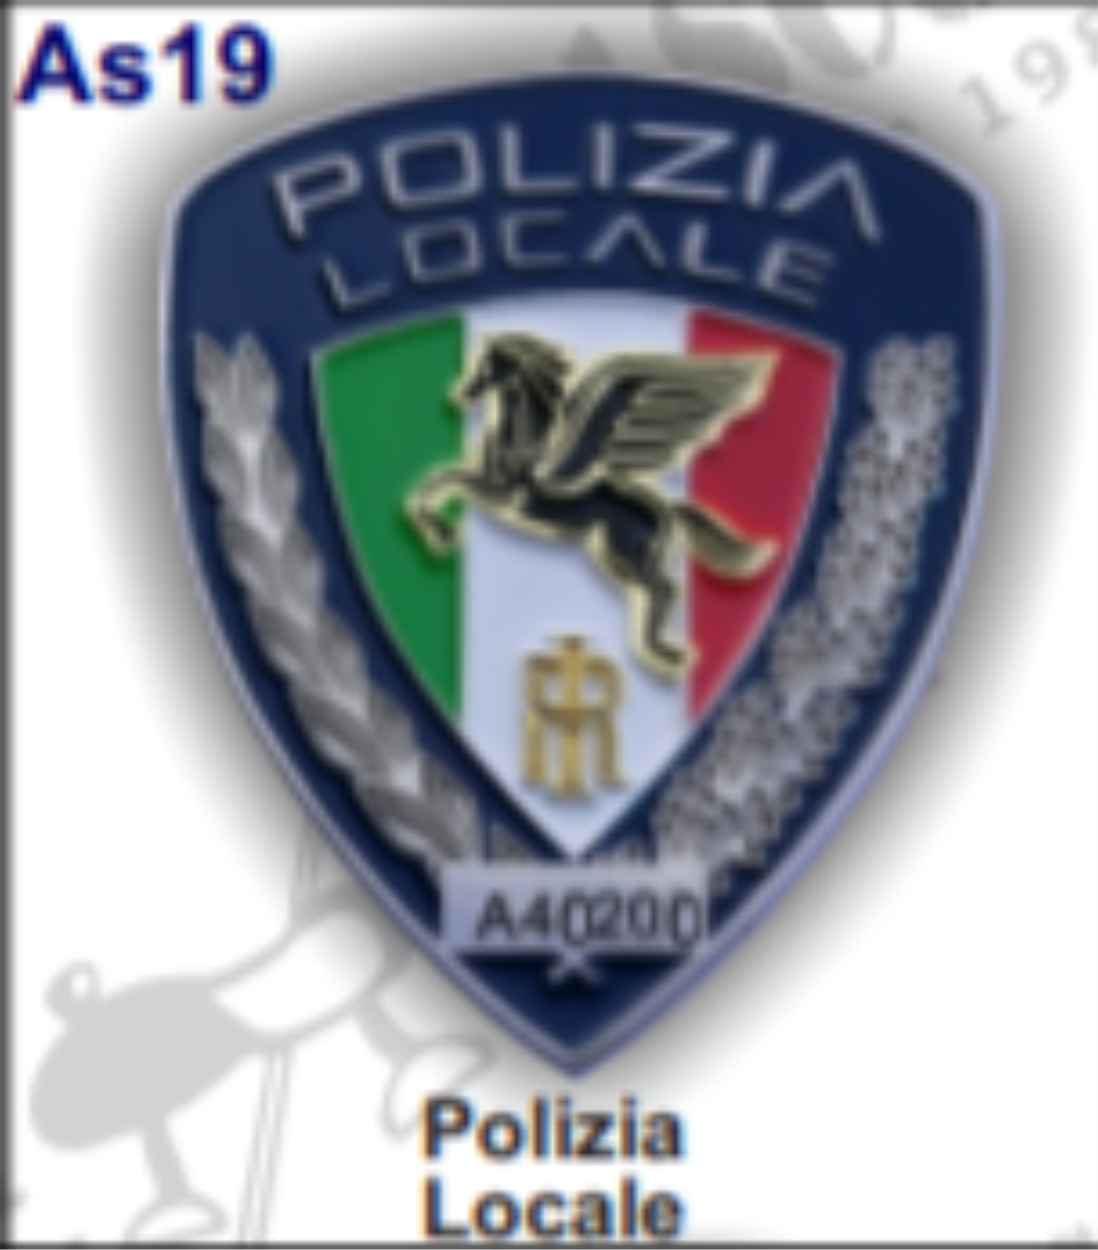 placca-numerata-polizia-locale.png